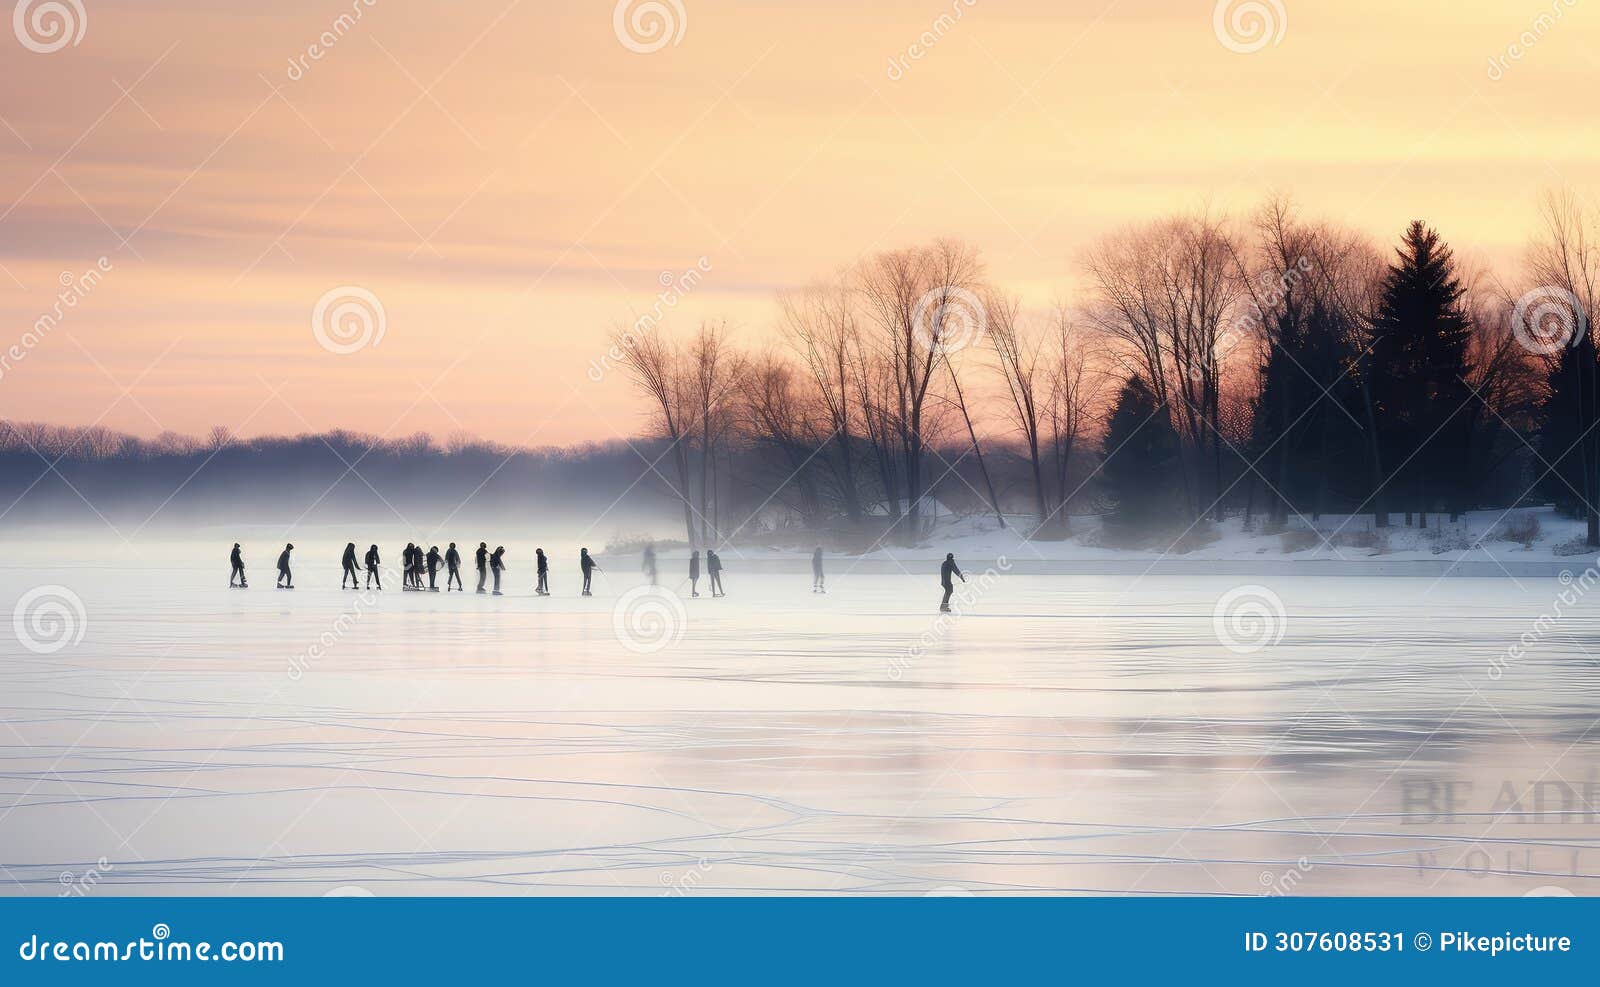 glide ice skating on lake